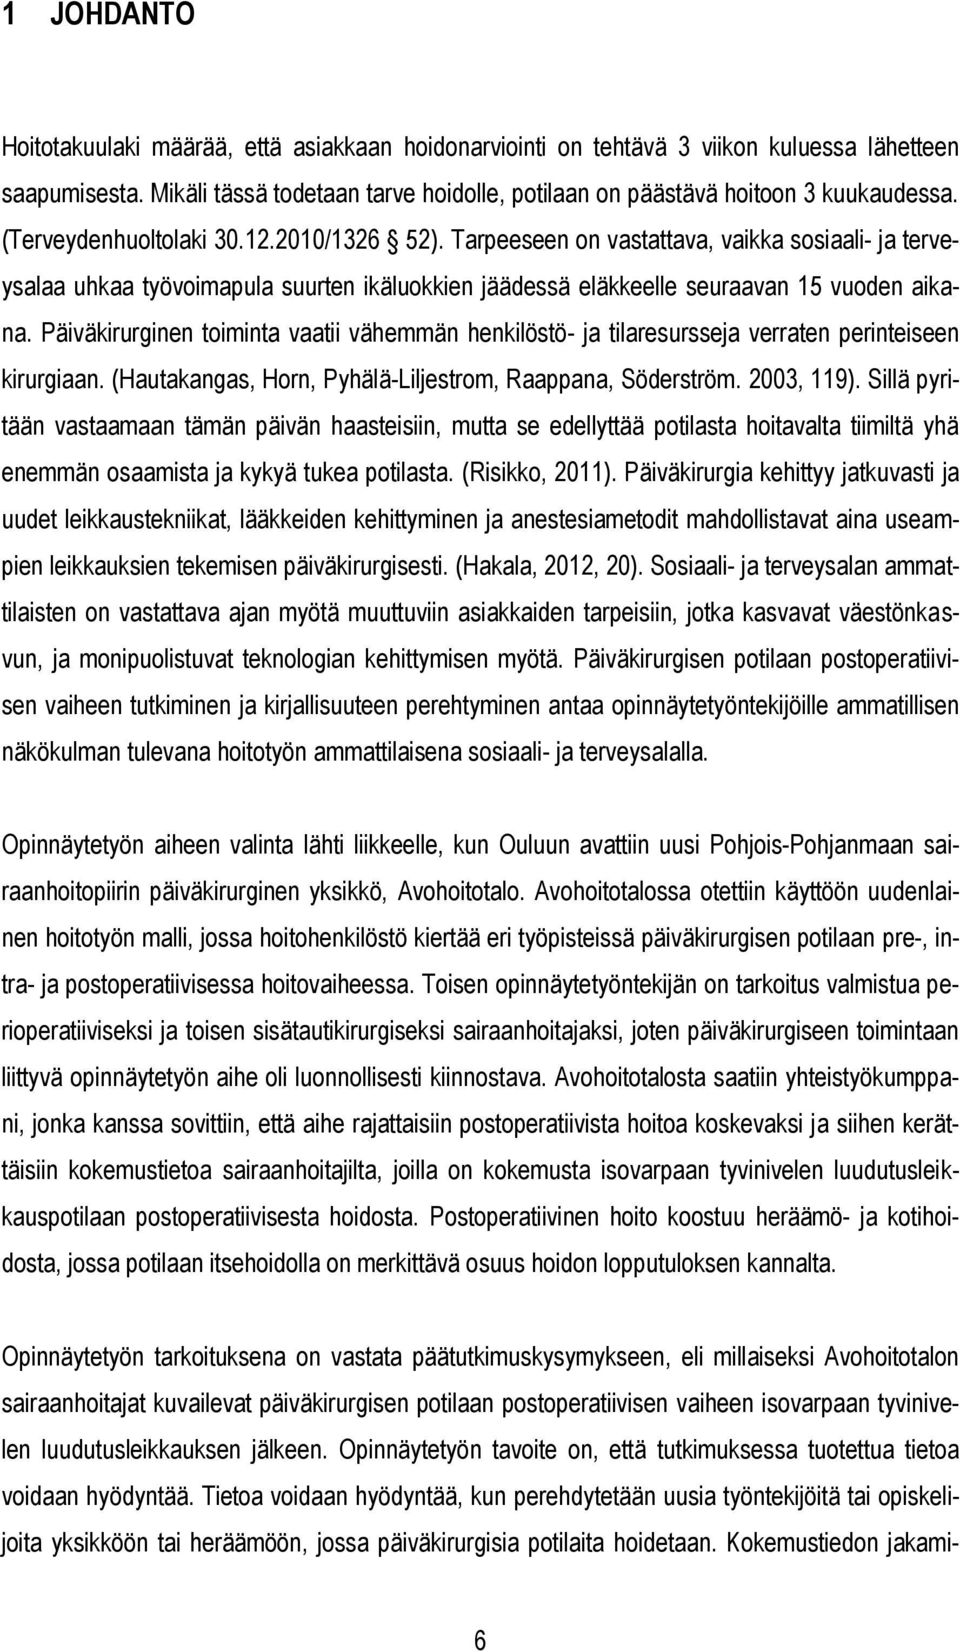 Päiväkirurginen toiminta vaatii vähemmän henkilöstö- ja tilaresursseja verraten perinteiseen kirurgiaan. (Hautakangas, Horn, Pyhälä-Liljestrom, Raappana, Söderström. 2003, 119).